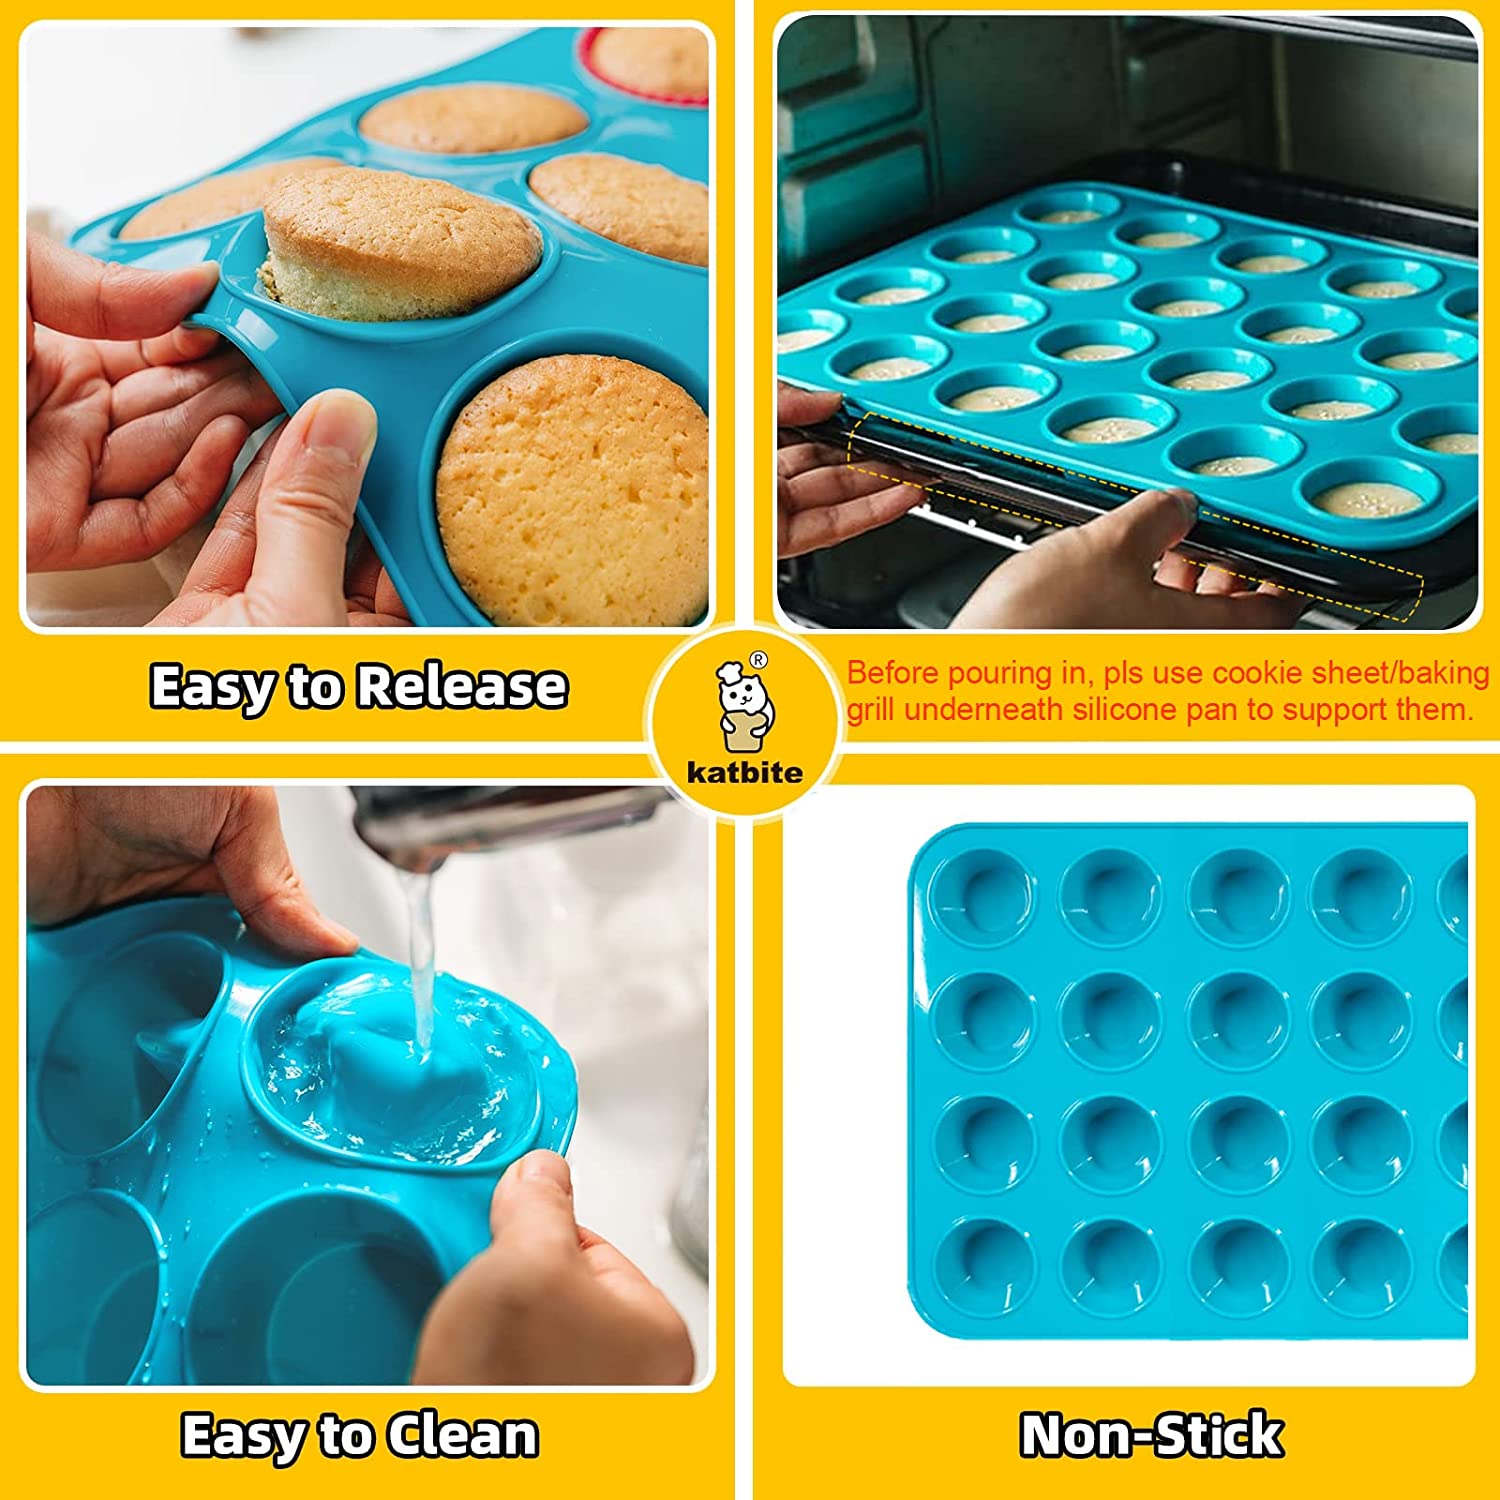 11 Cavity Silicone Mini Muffin Pan